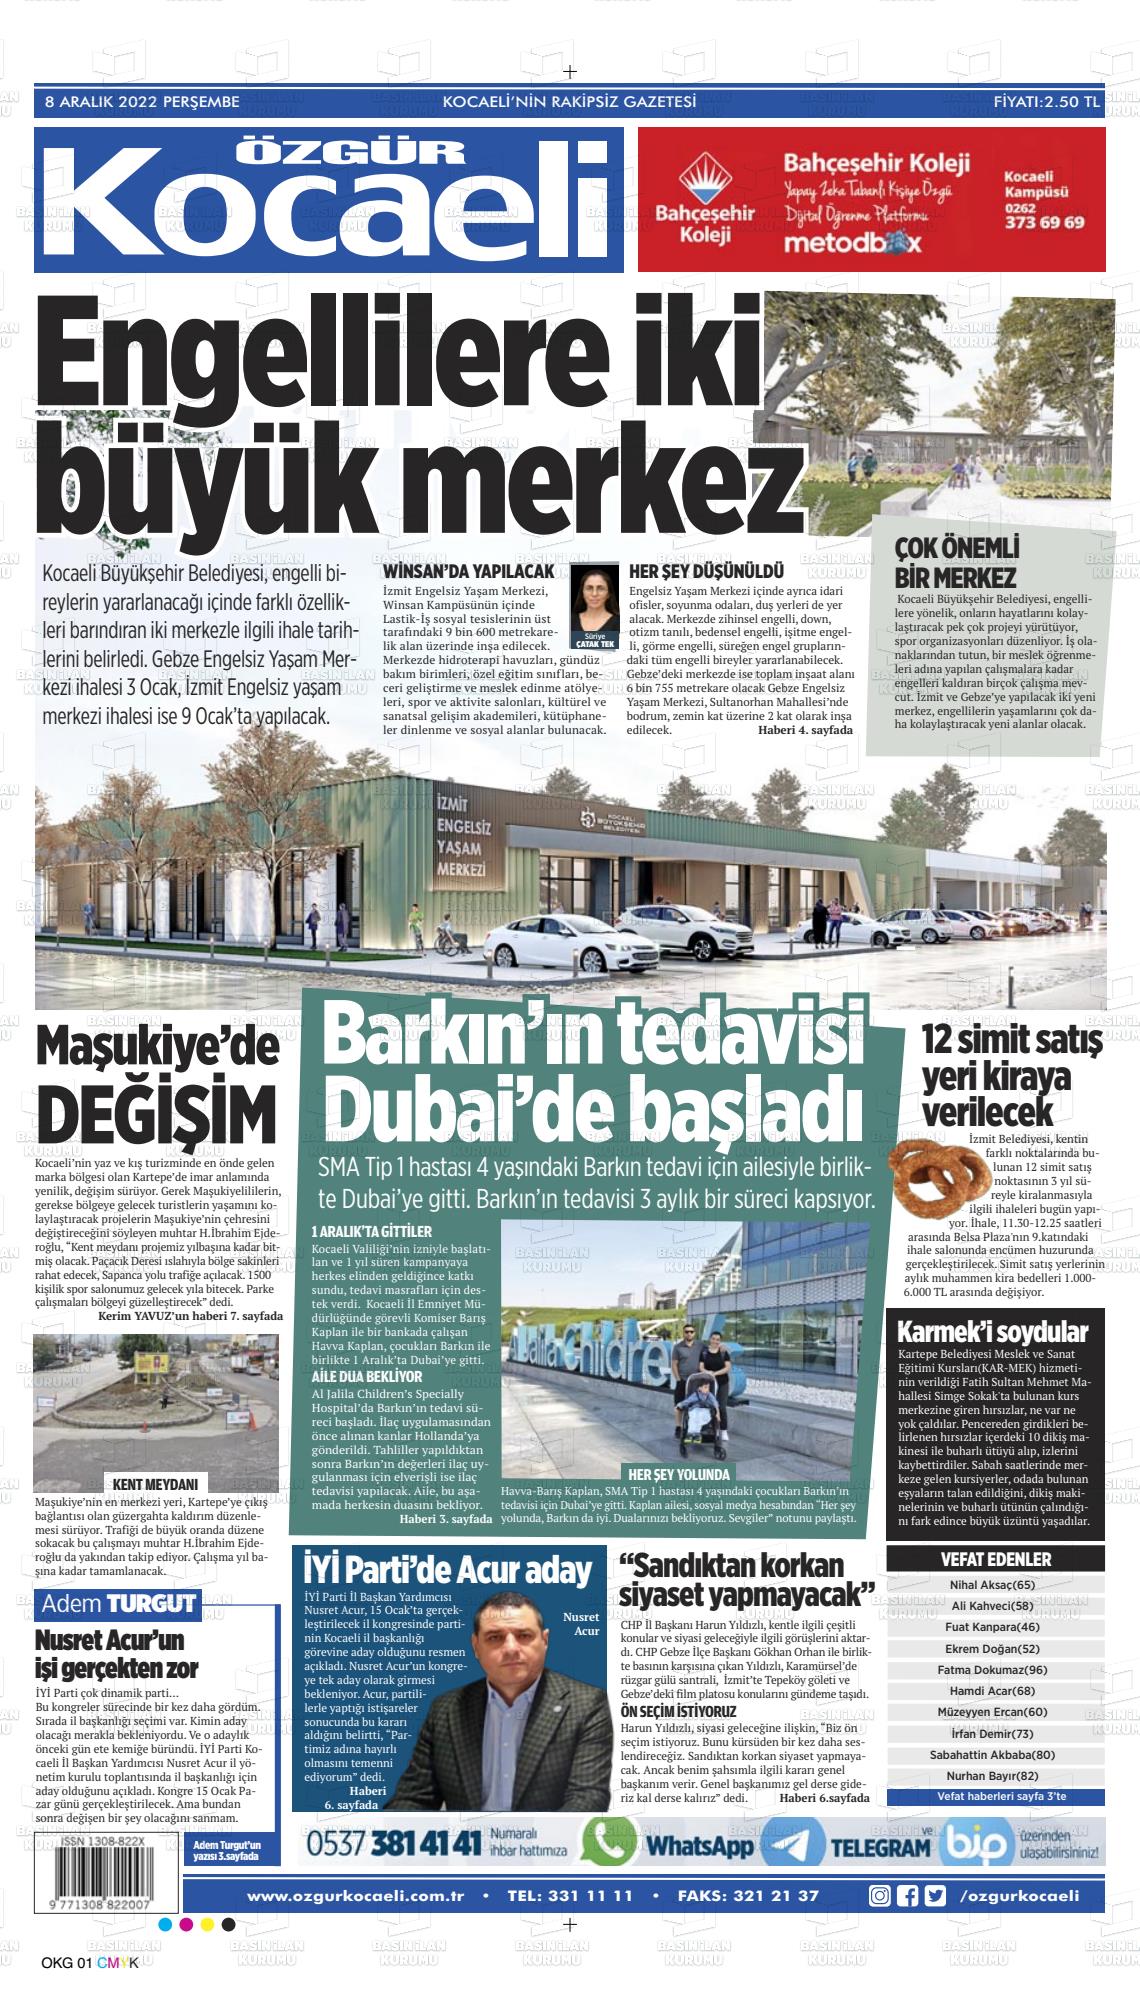 08 Aralık 2022 Özgür Kocaeli Gazete Manşeti